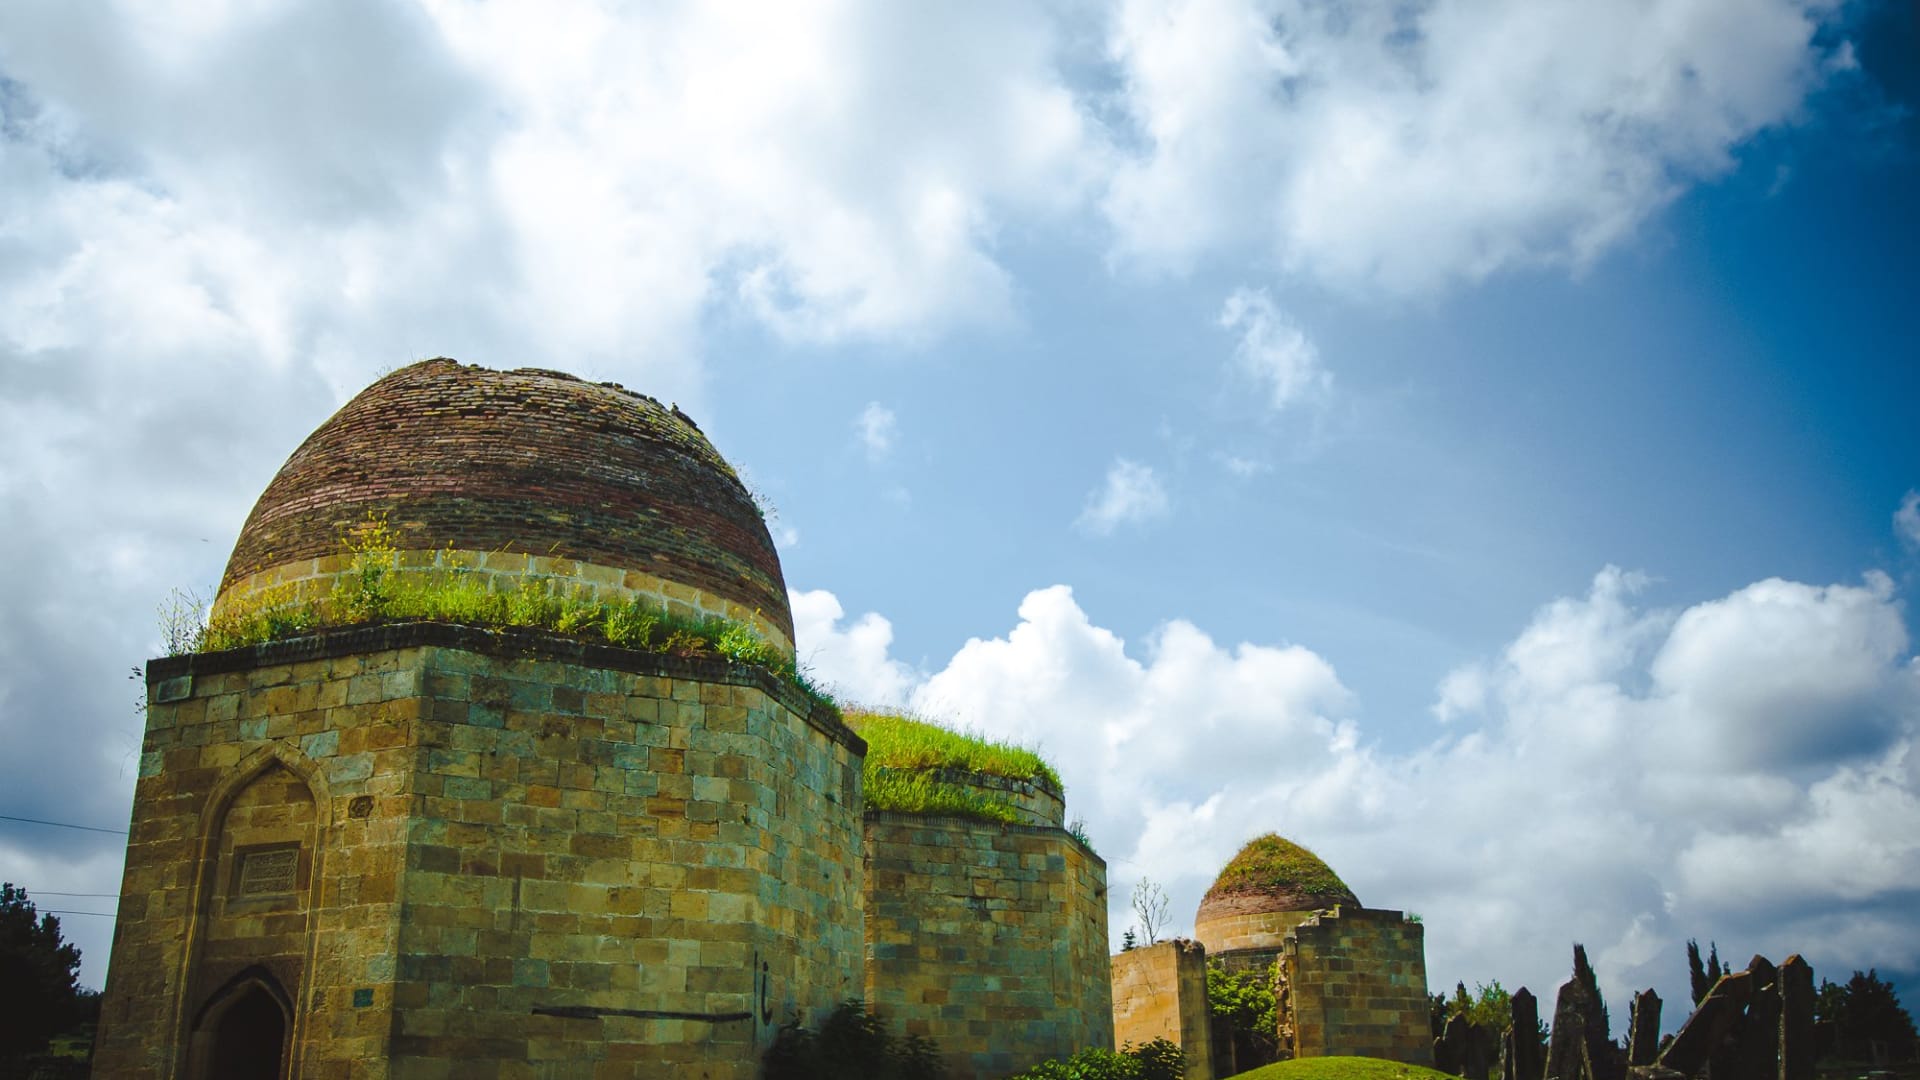   في أذربيجان، استكشف مقبرة القباب السبع.